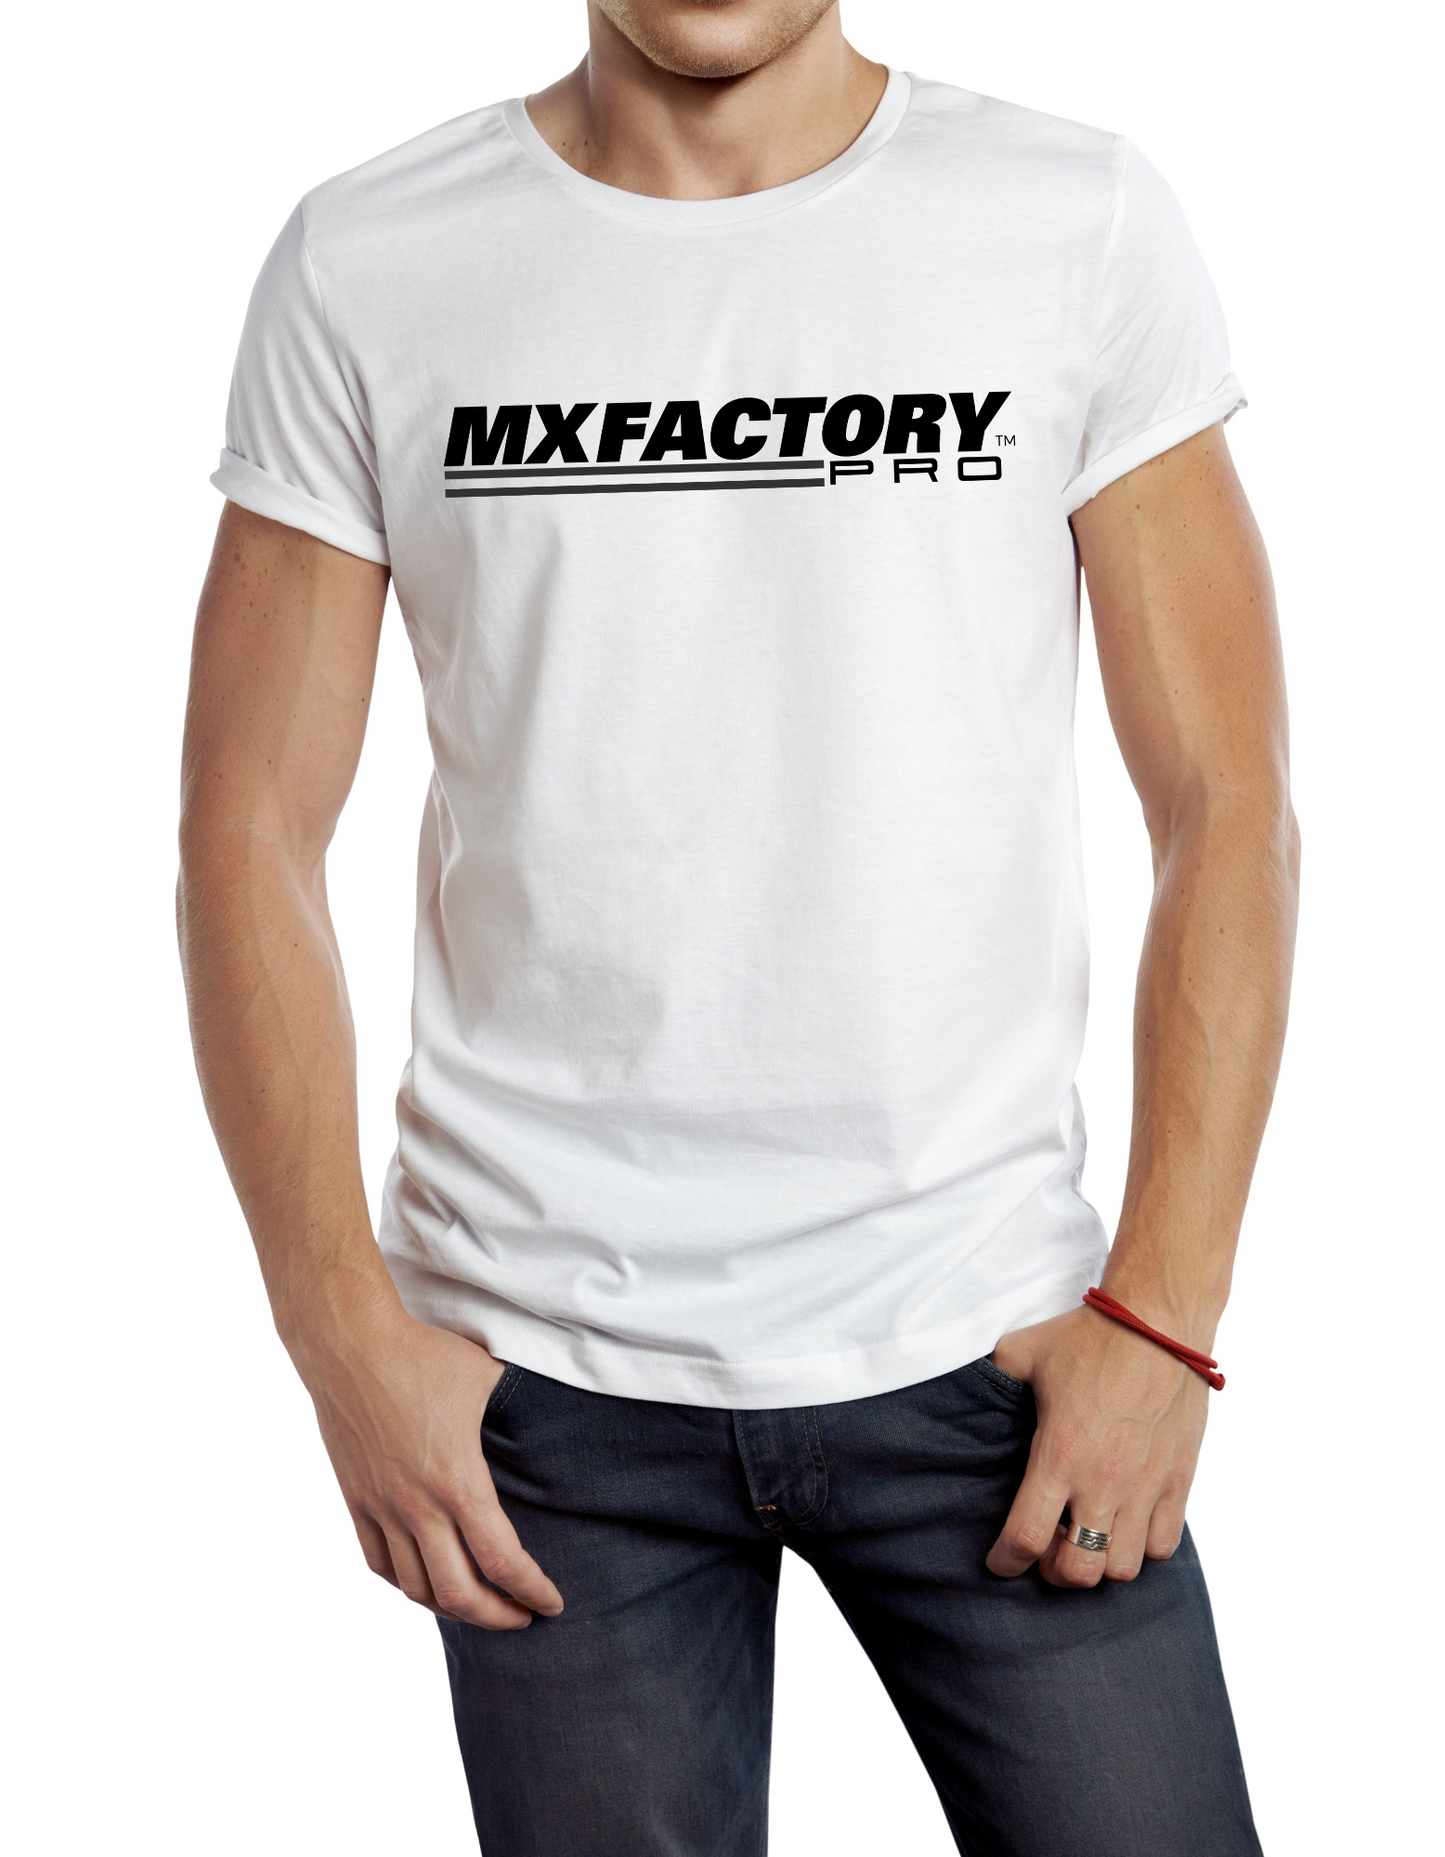 MX Factory Pro T-shirt | 180 GSM | 95% Cotton 5% Spandex